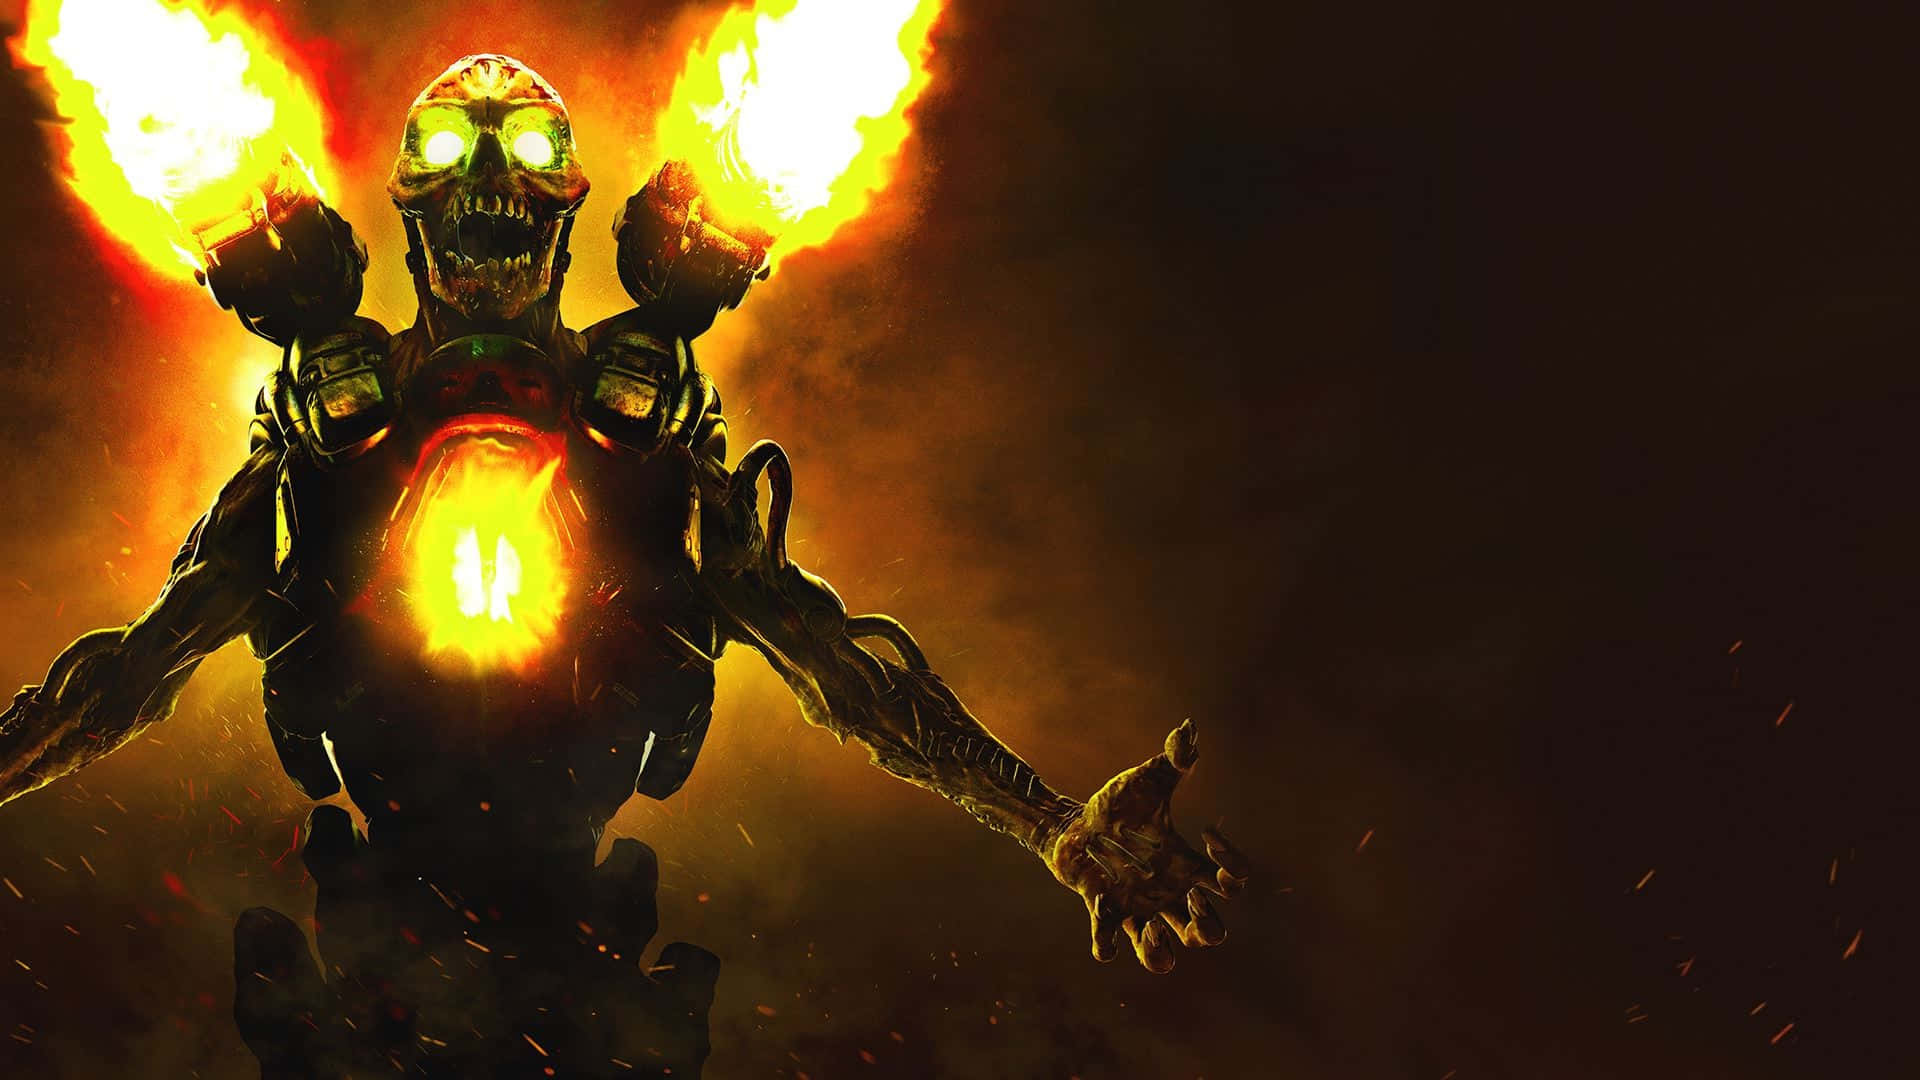 Doom 2016: Defy Hell on Earth Wallpaper